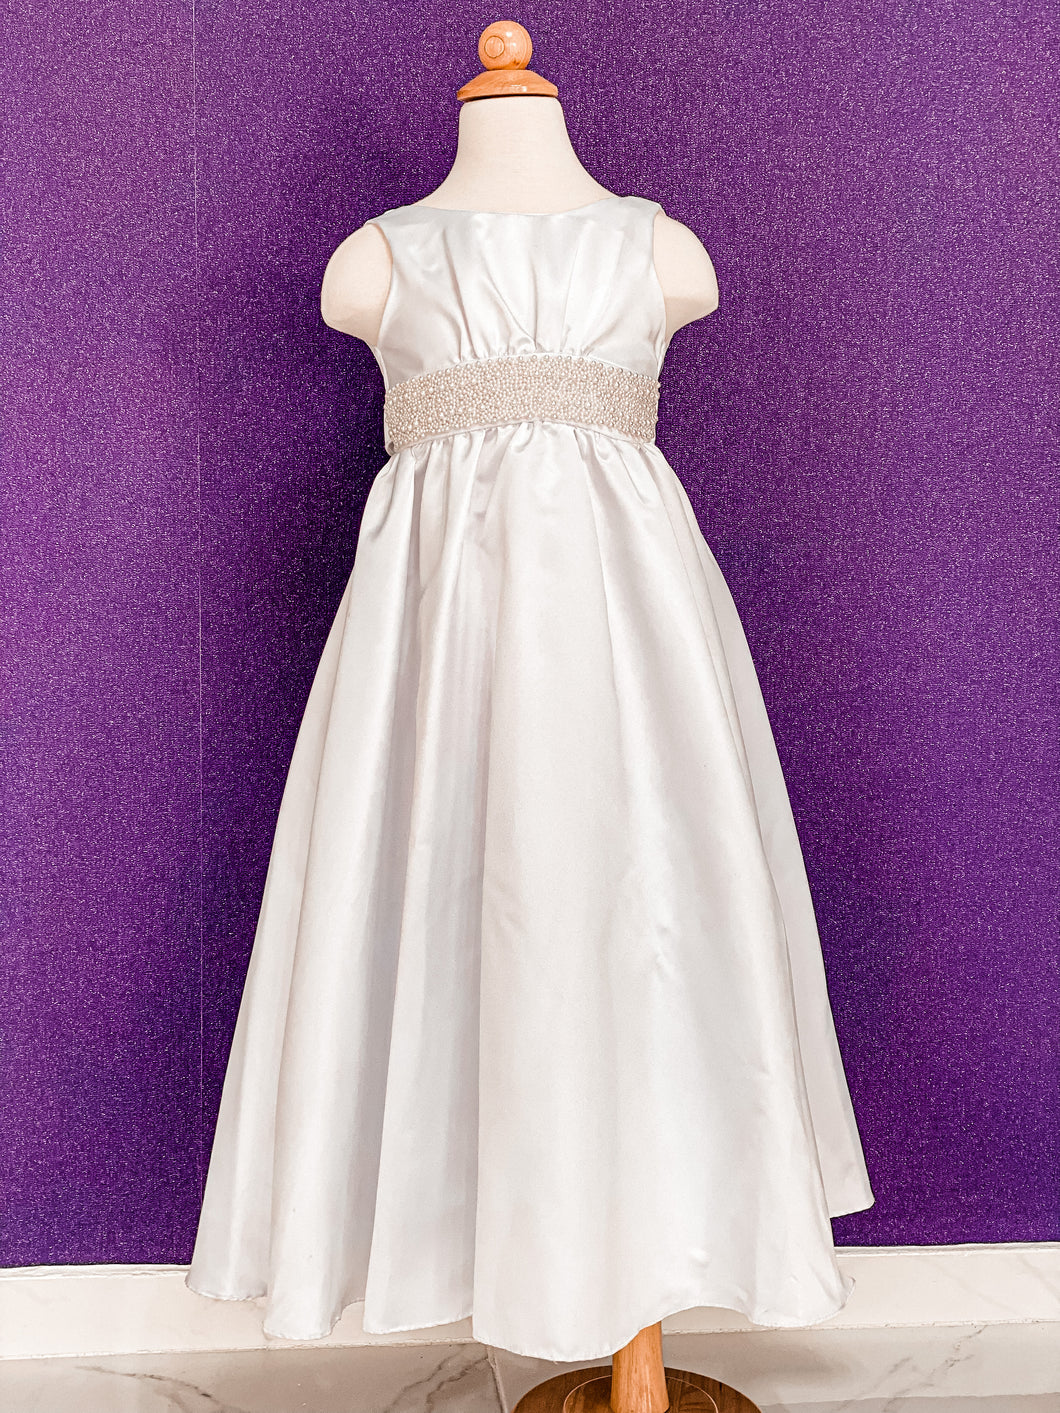 Lily white dress